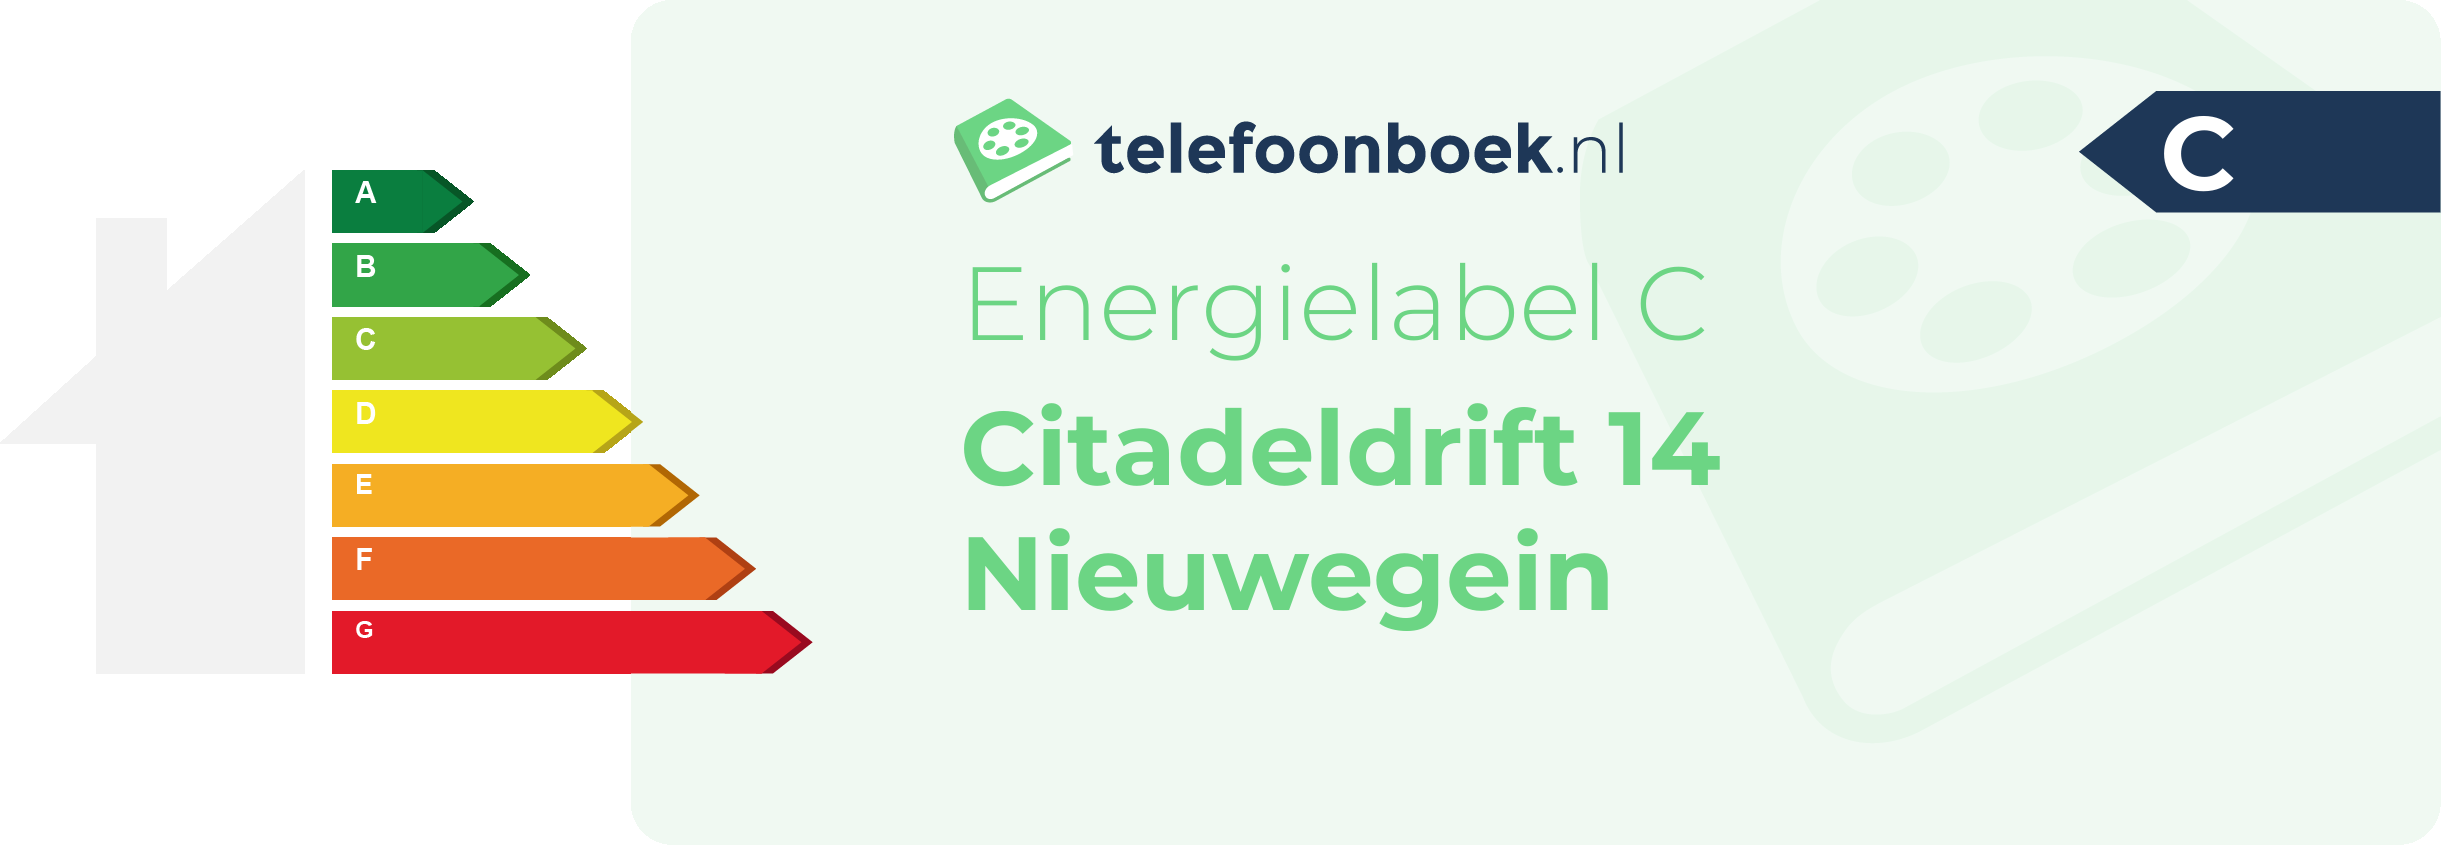 Energielabel Citadeldrift 14 Nieuwegein